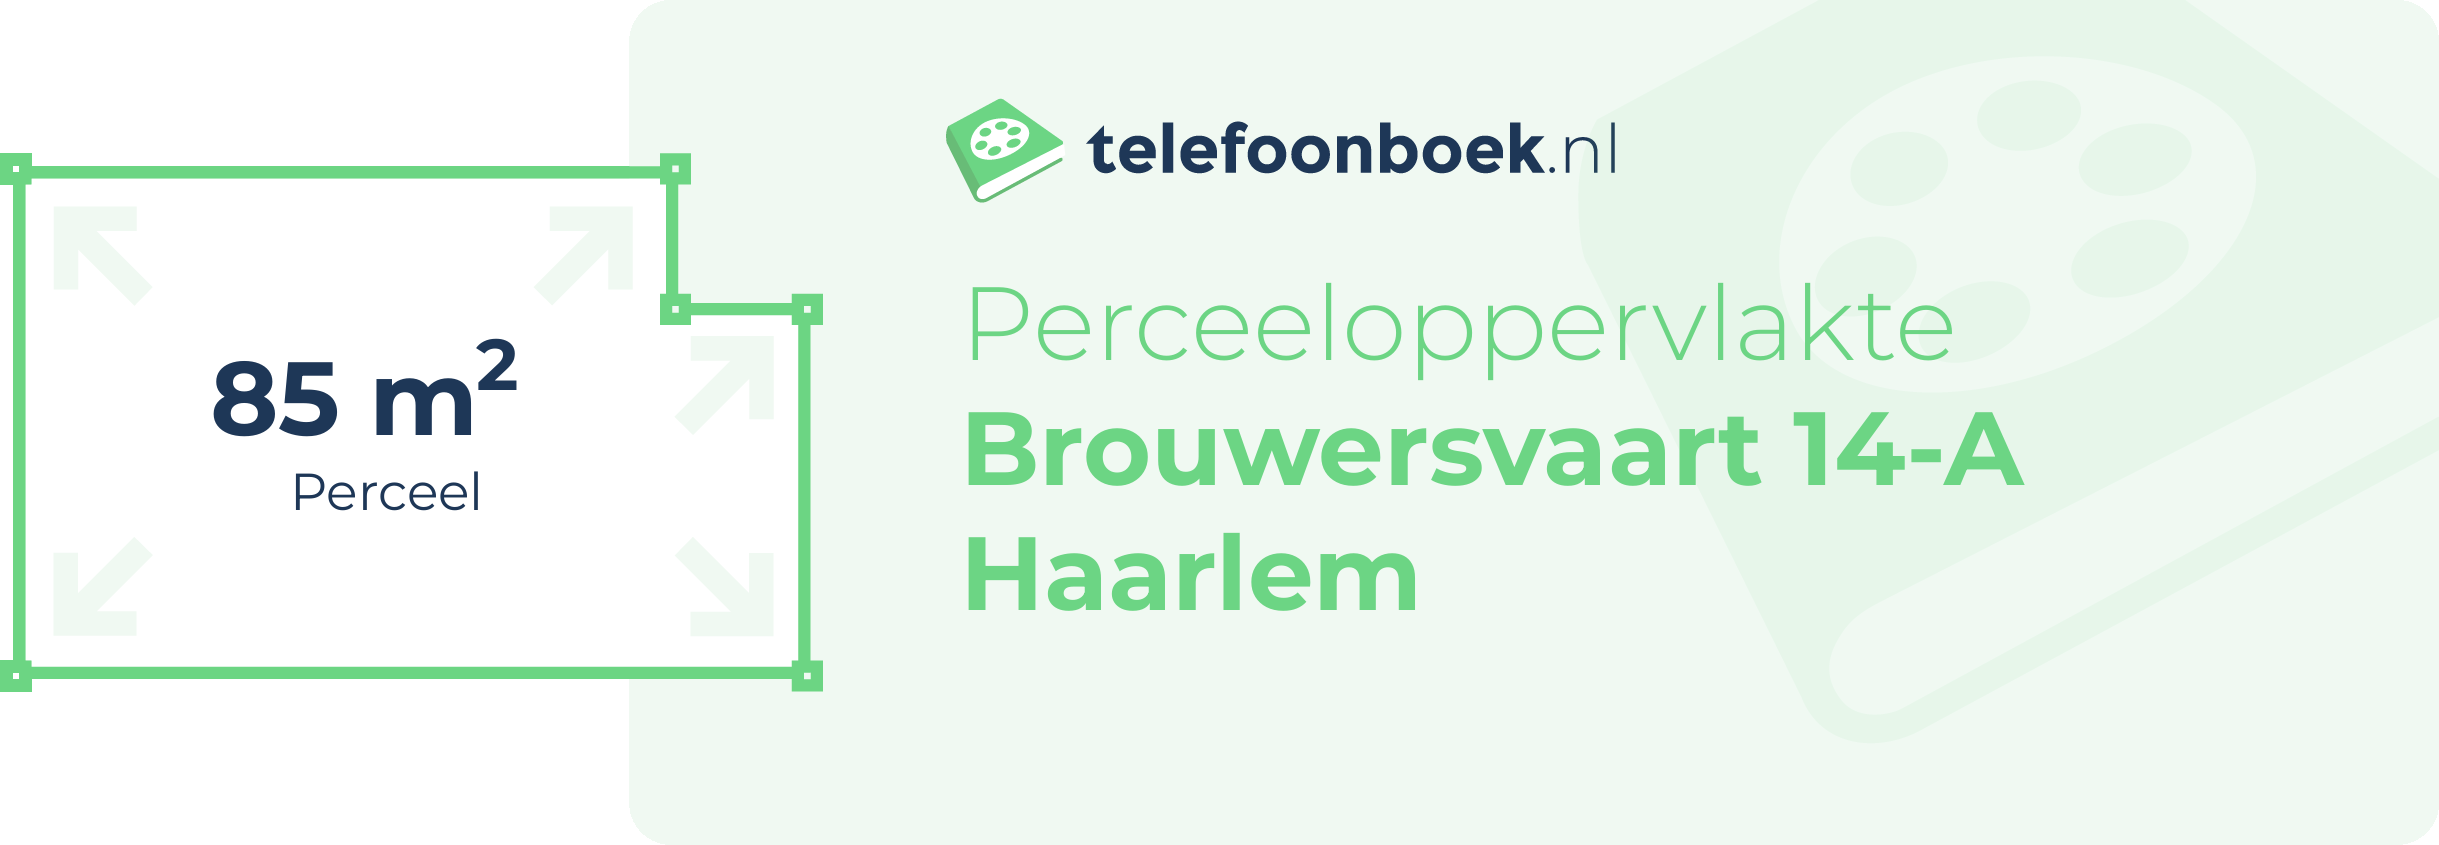 Perceeloppervlakte Brouwersvaart 14-A Haarlem